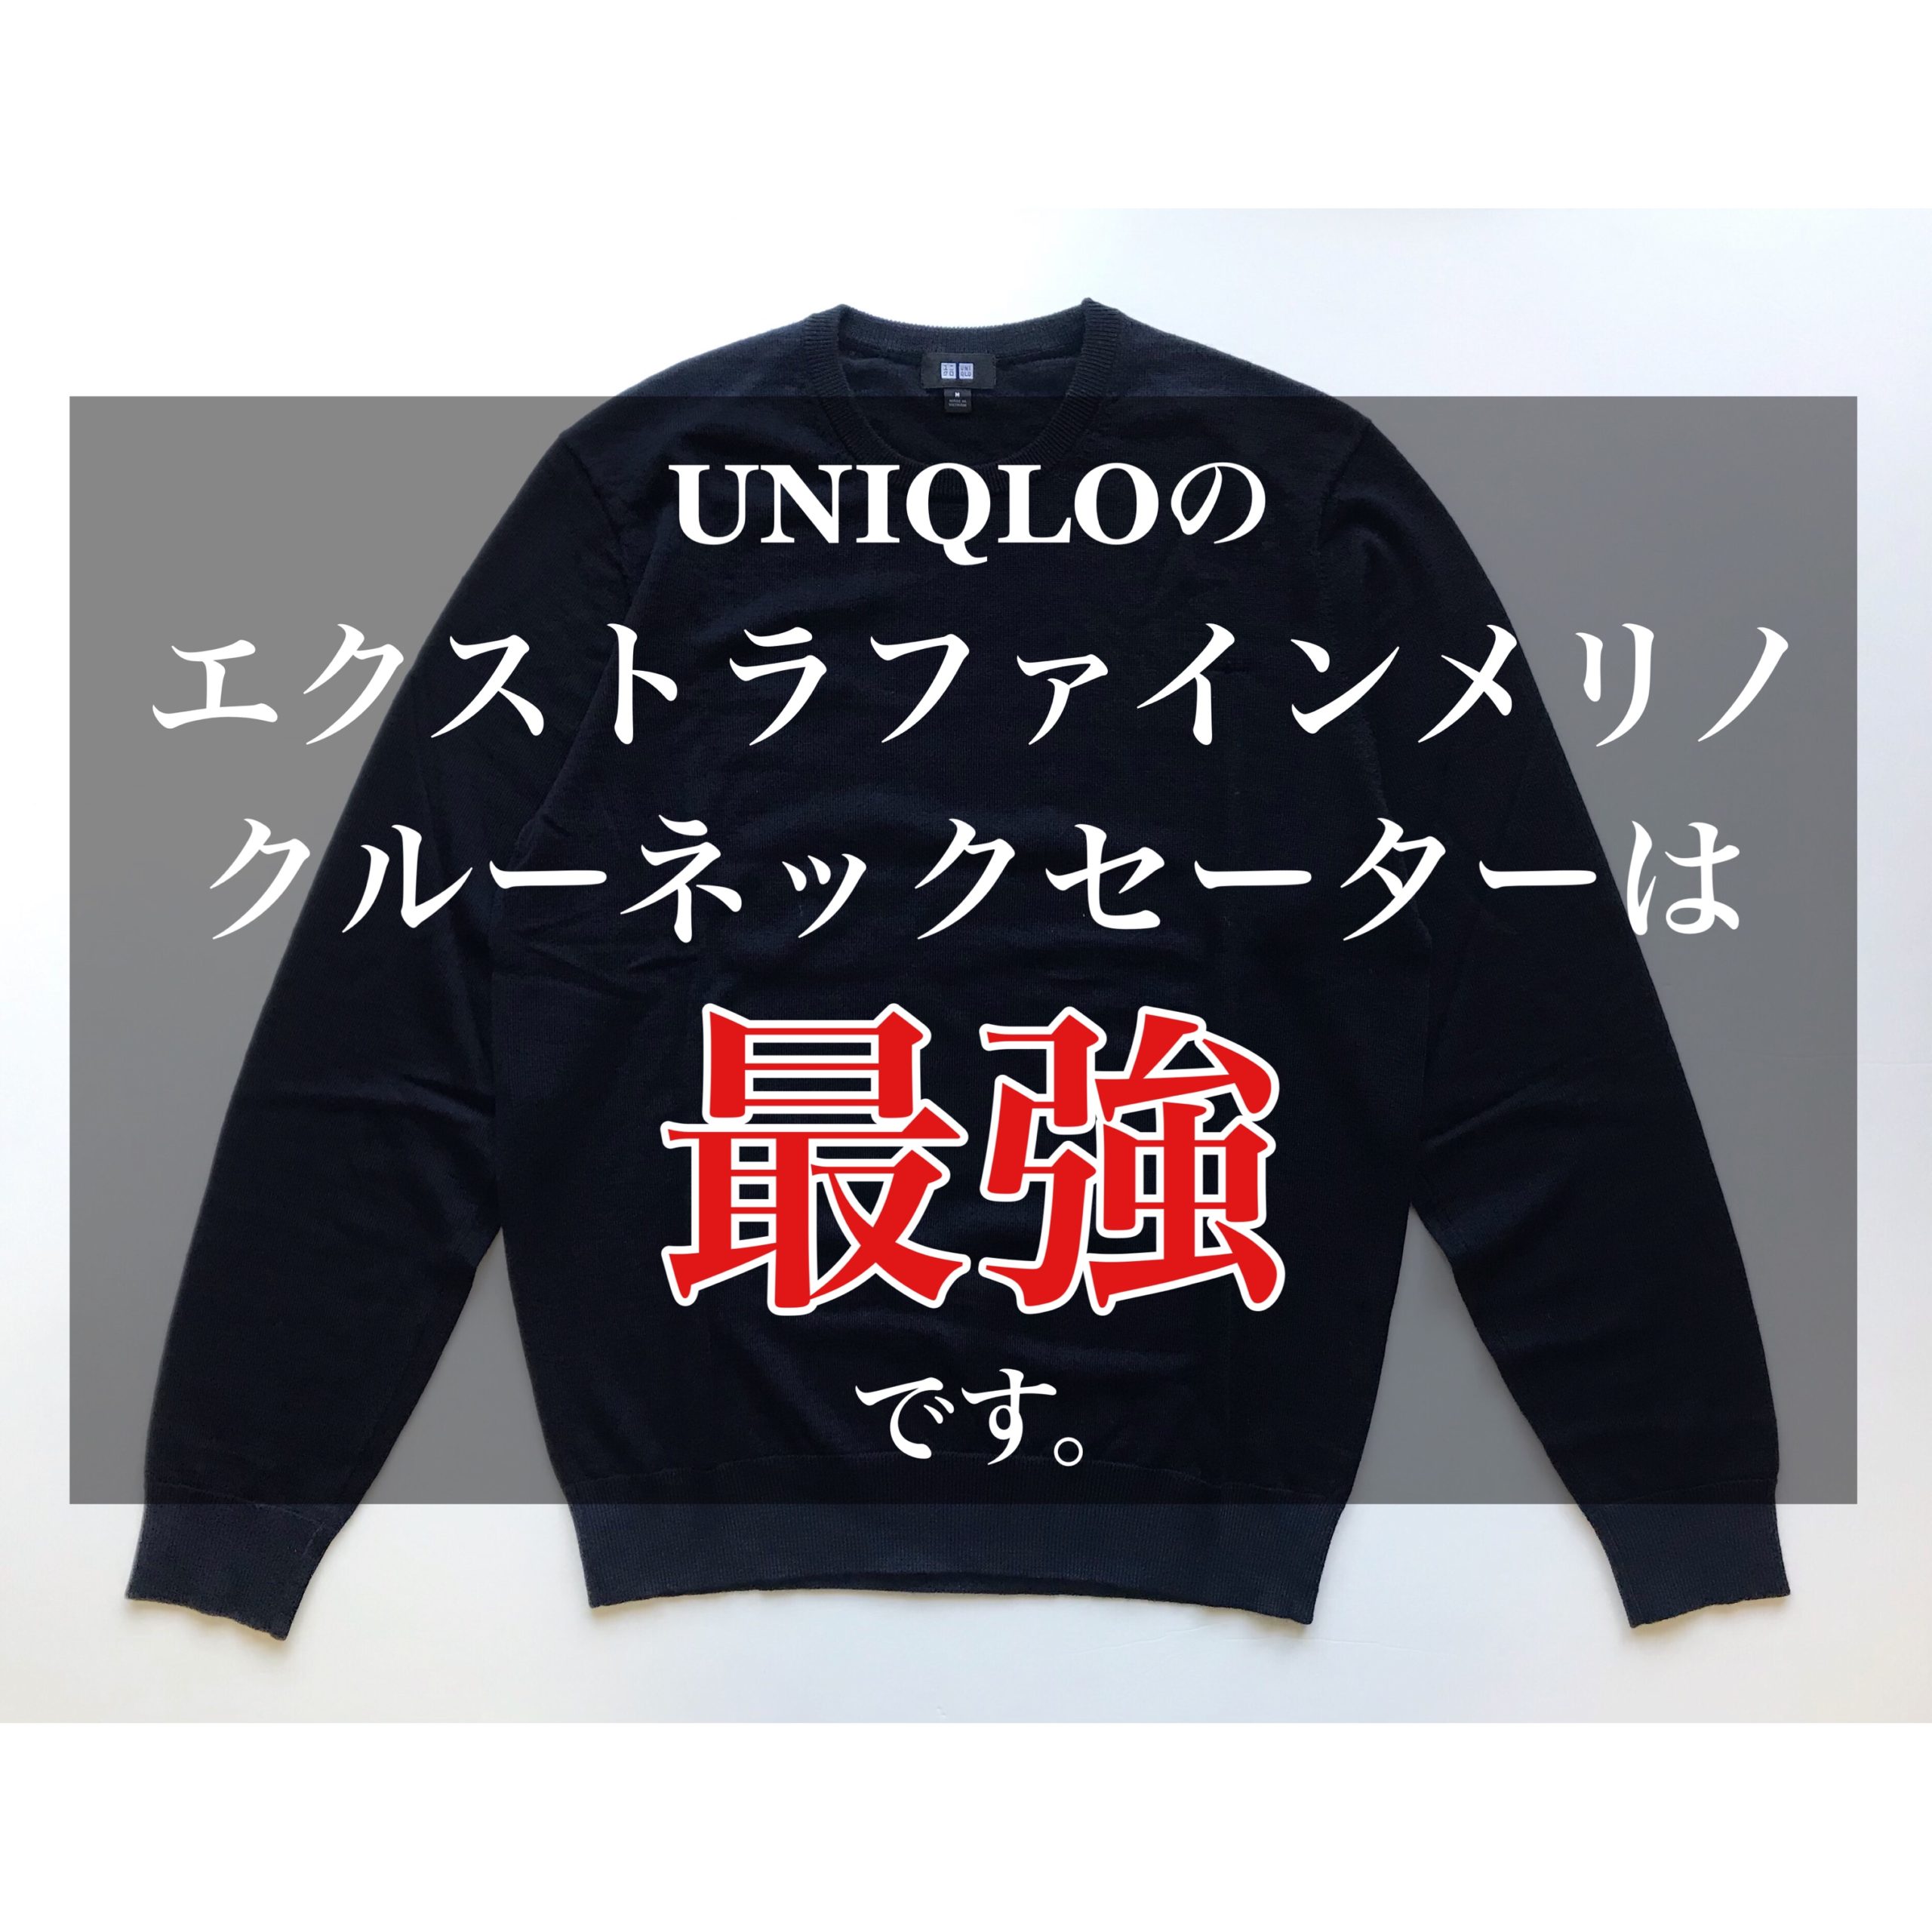 UNIQLO エクストラファインメリノクルーネックセーター - ニット